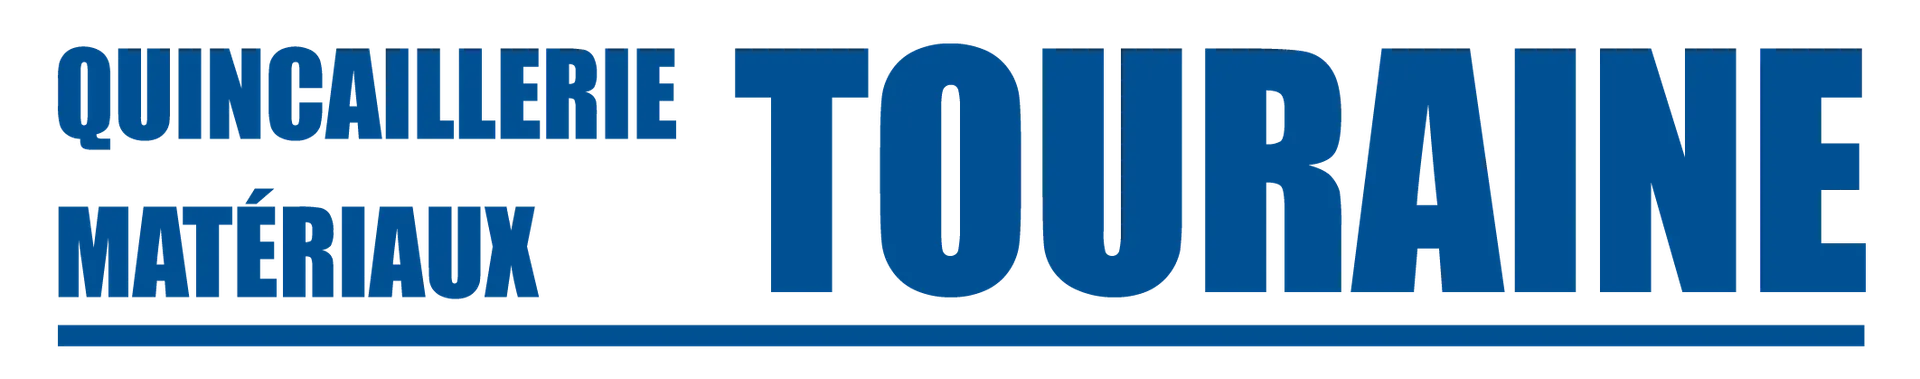 QUINCAILLERIE TOURAINE logo de circulaire